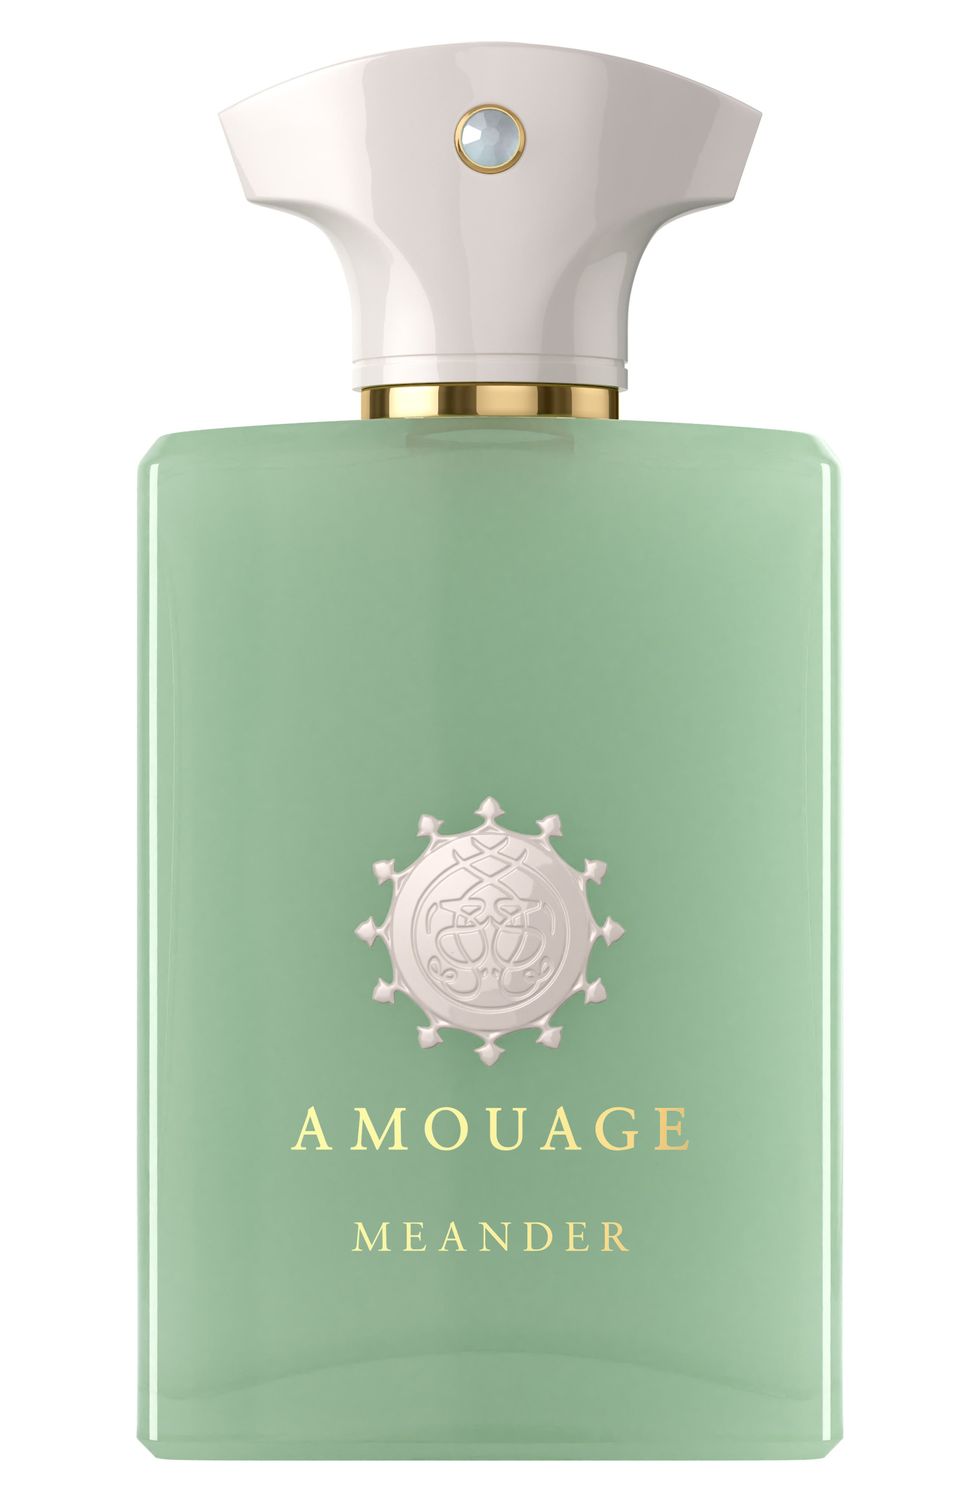 Amouage Meander Eau De Parfum, Size - 3.4 oz